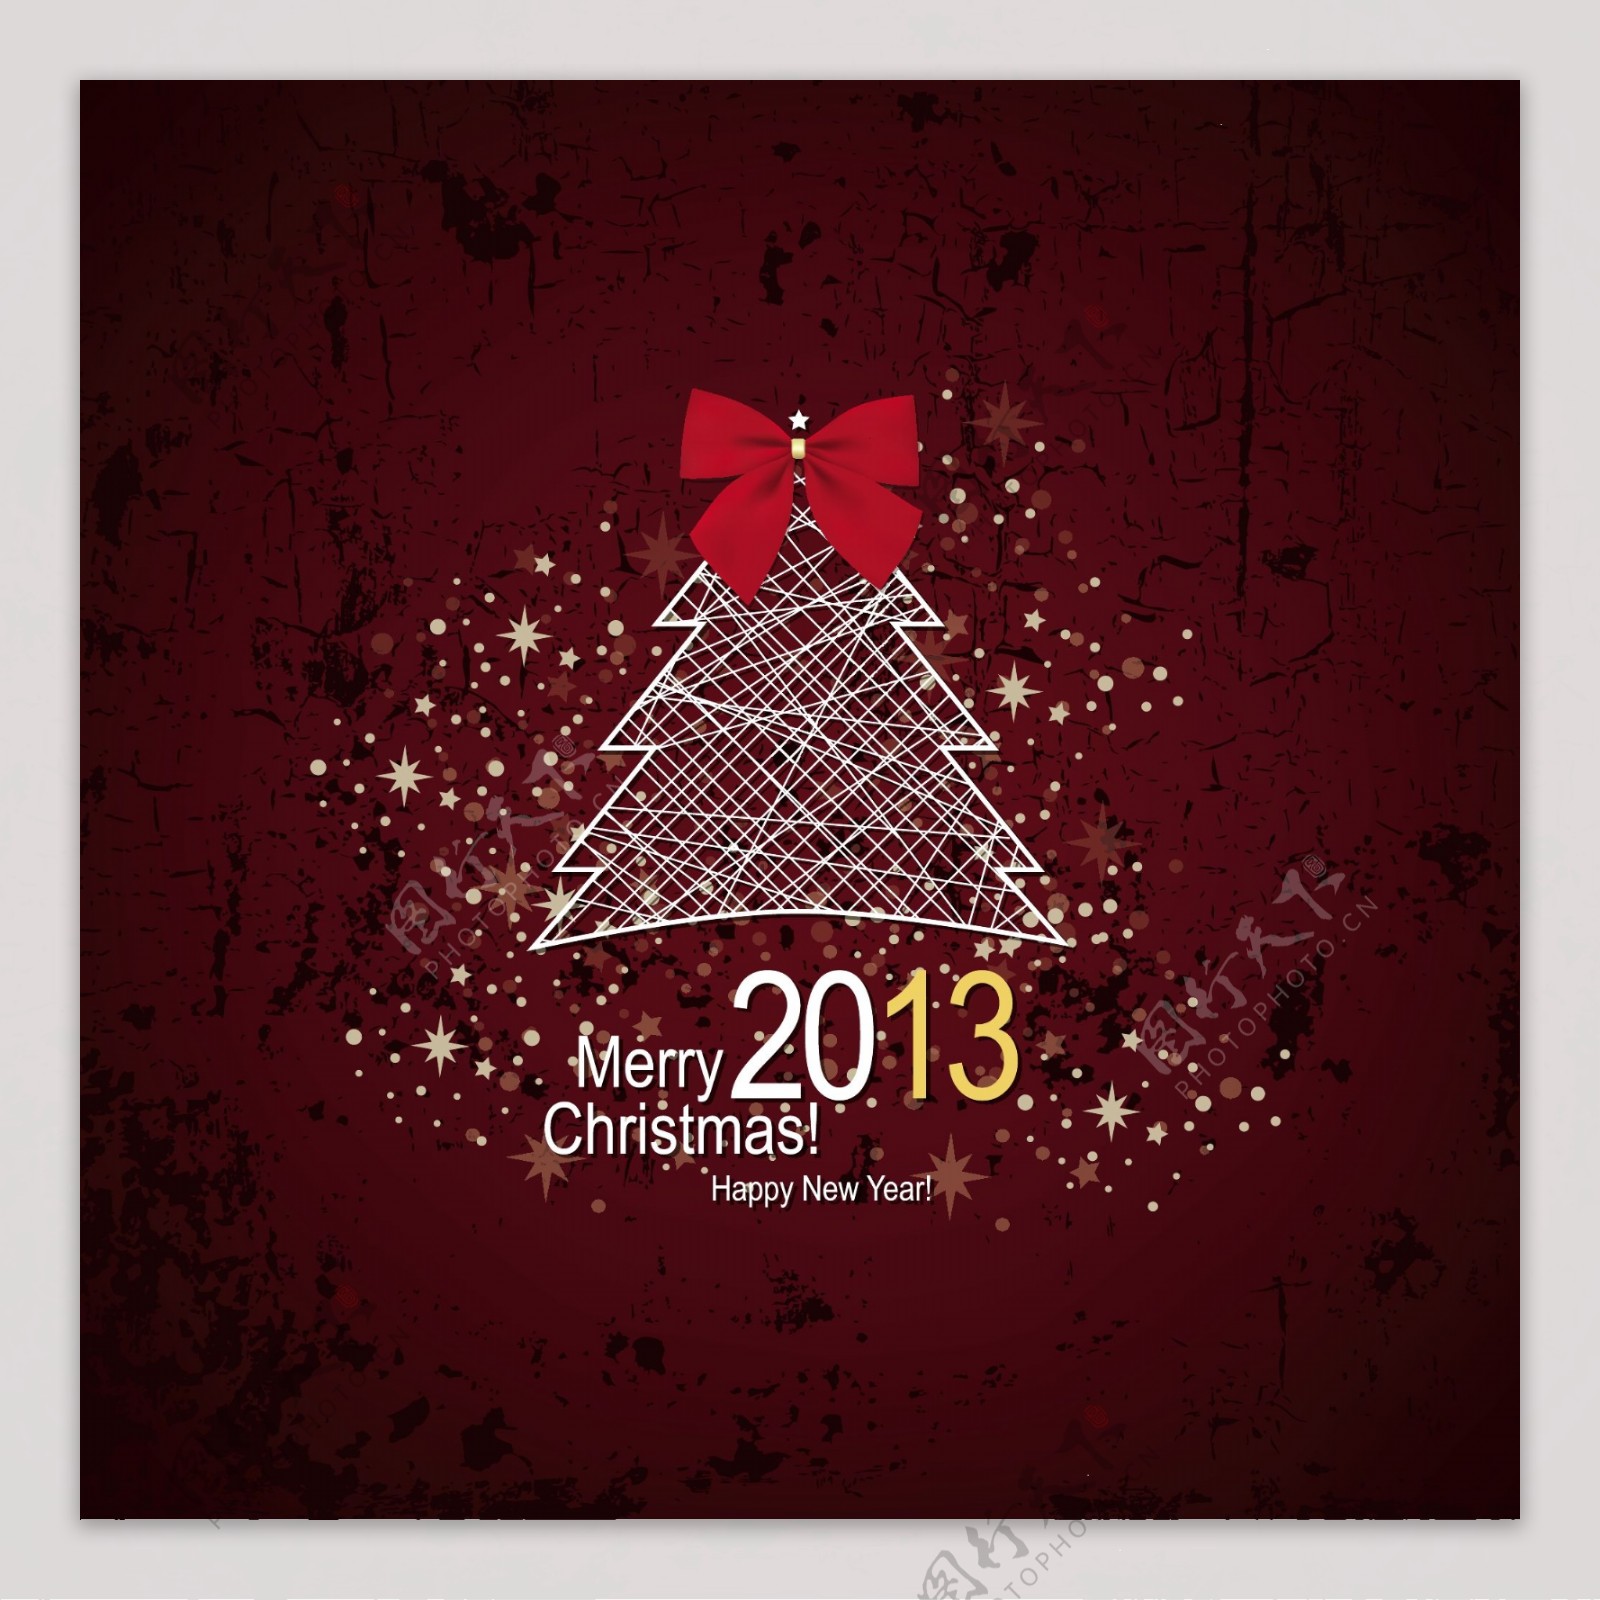 圣诞快乐和新年快乐201318